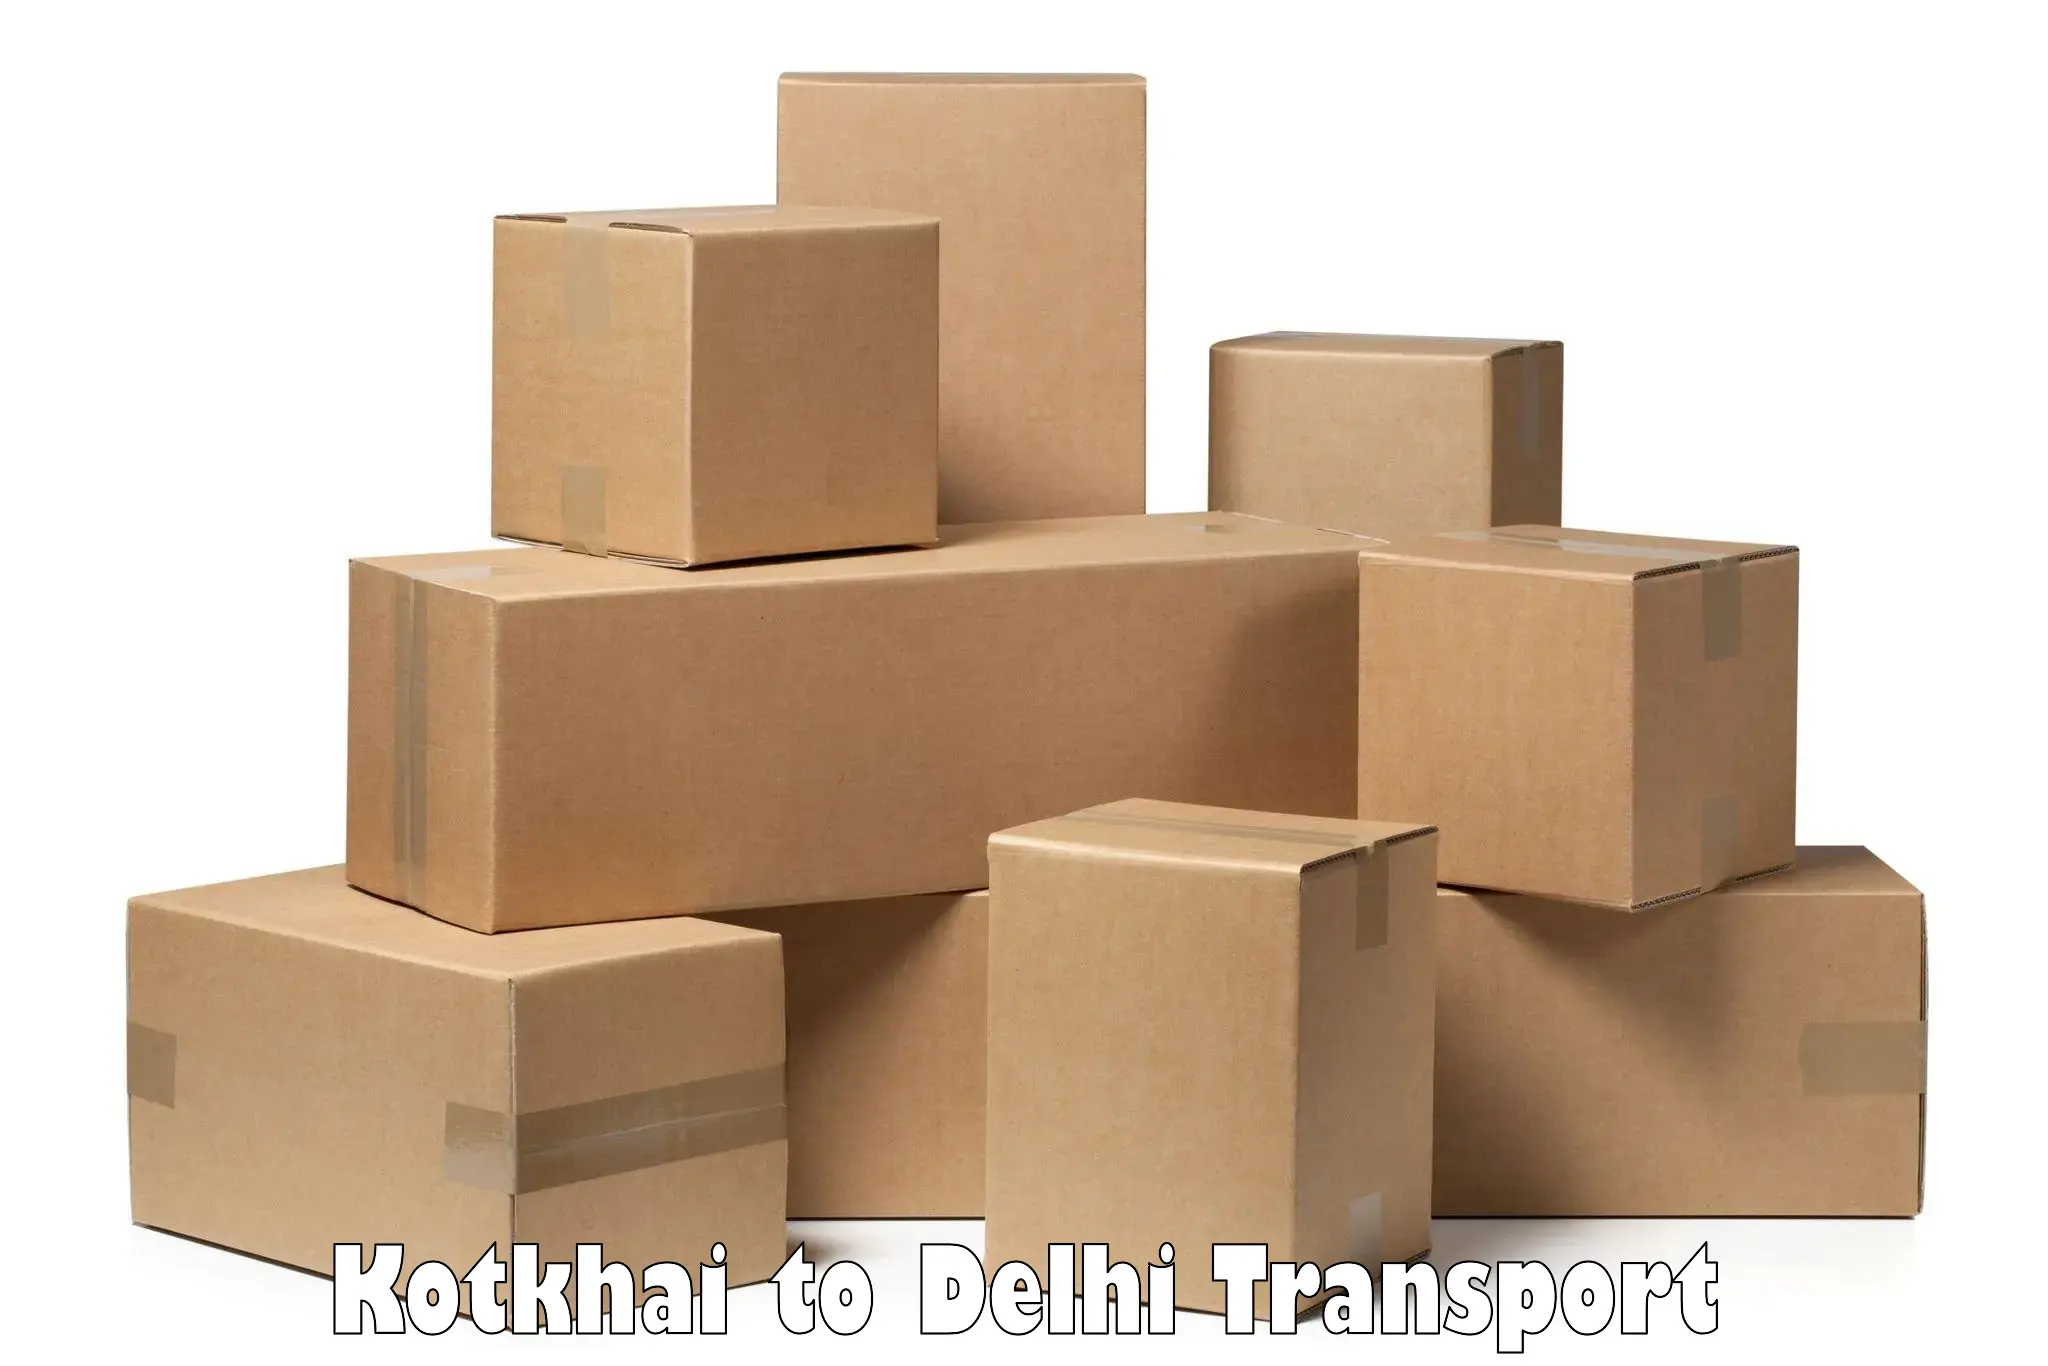 International cargo transportation services Kotkhai to University of Delhi